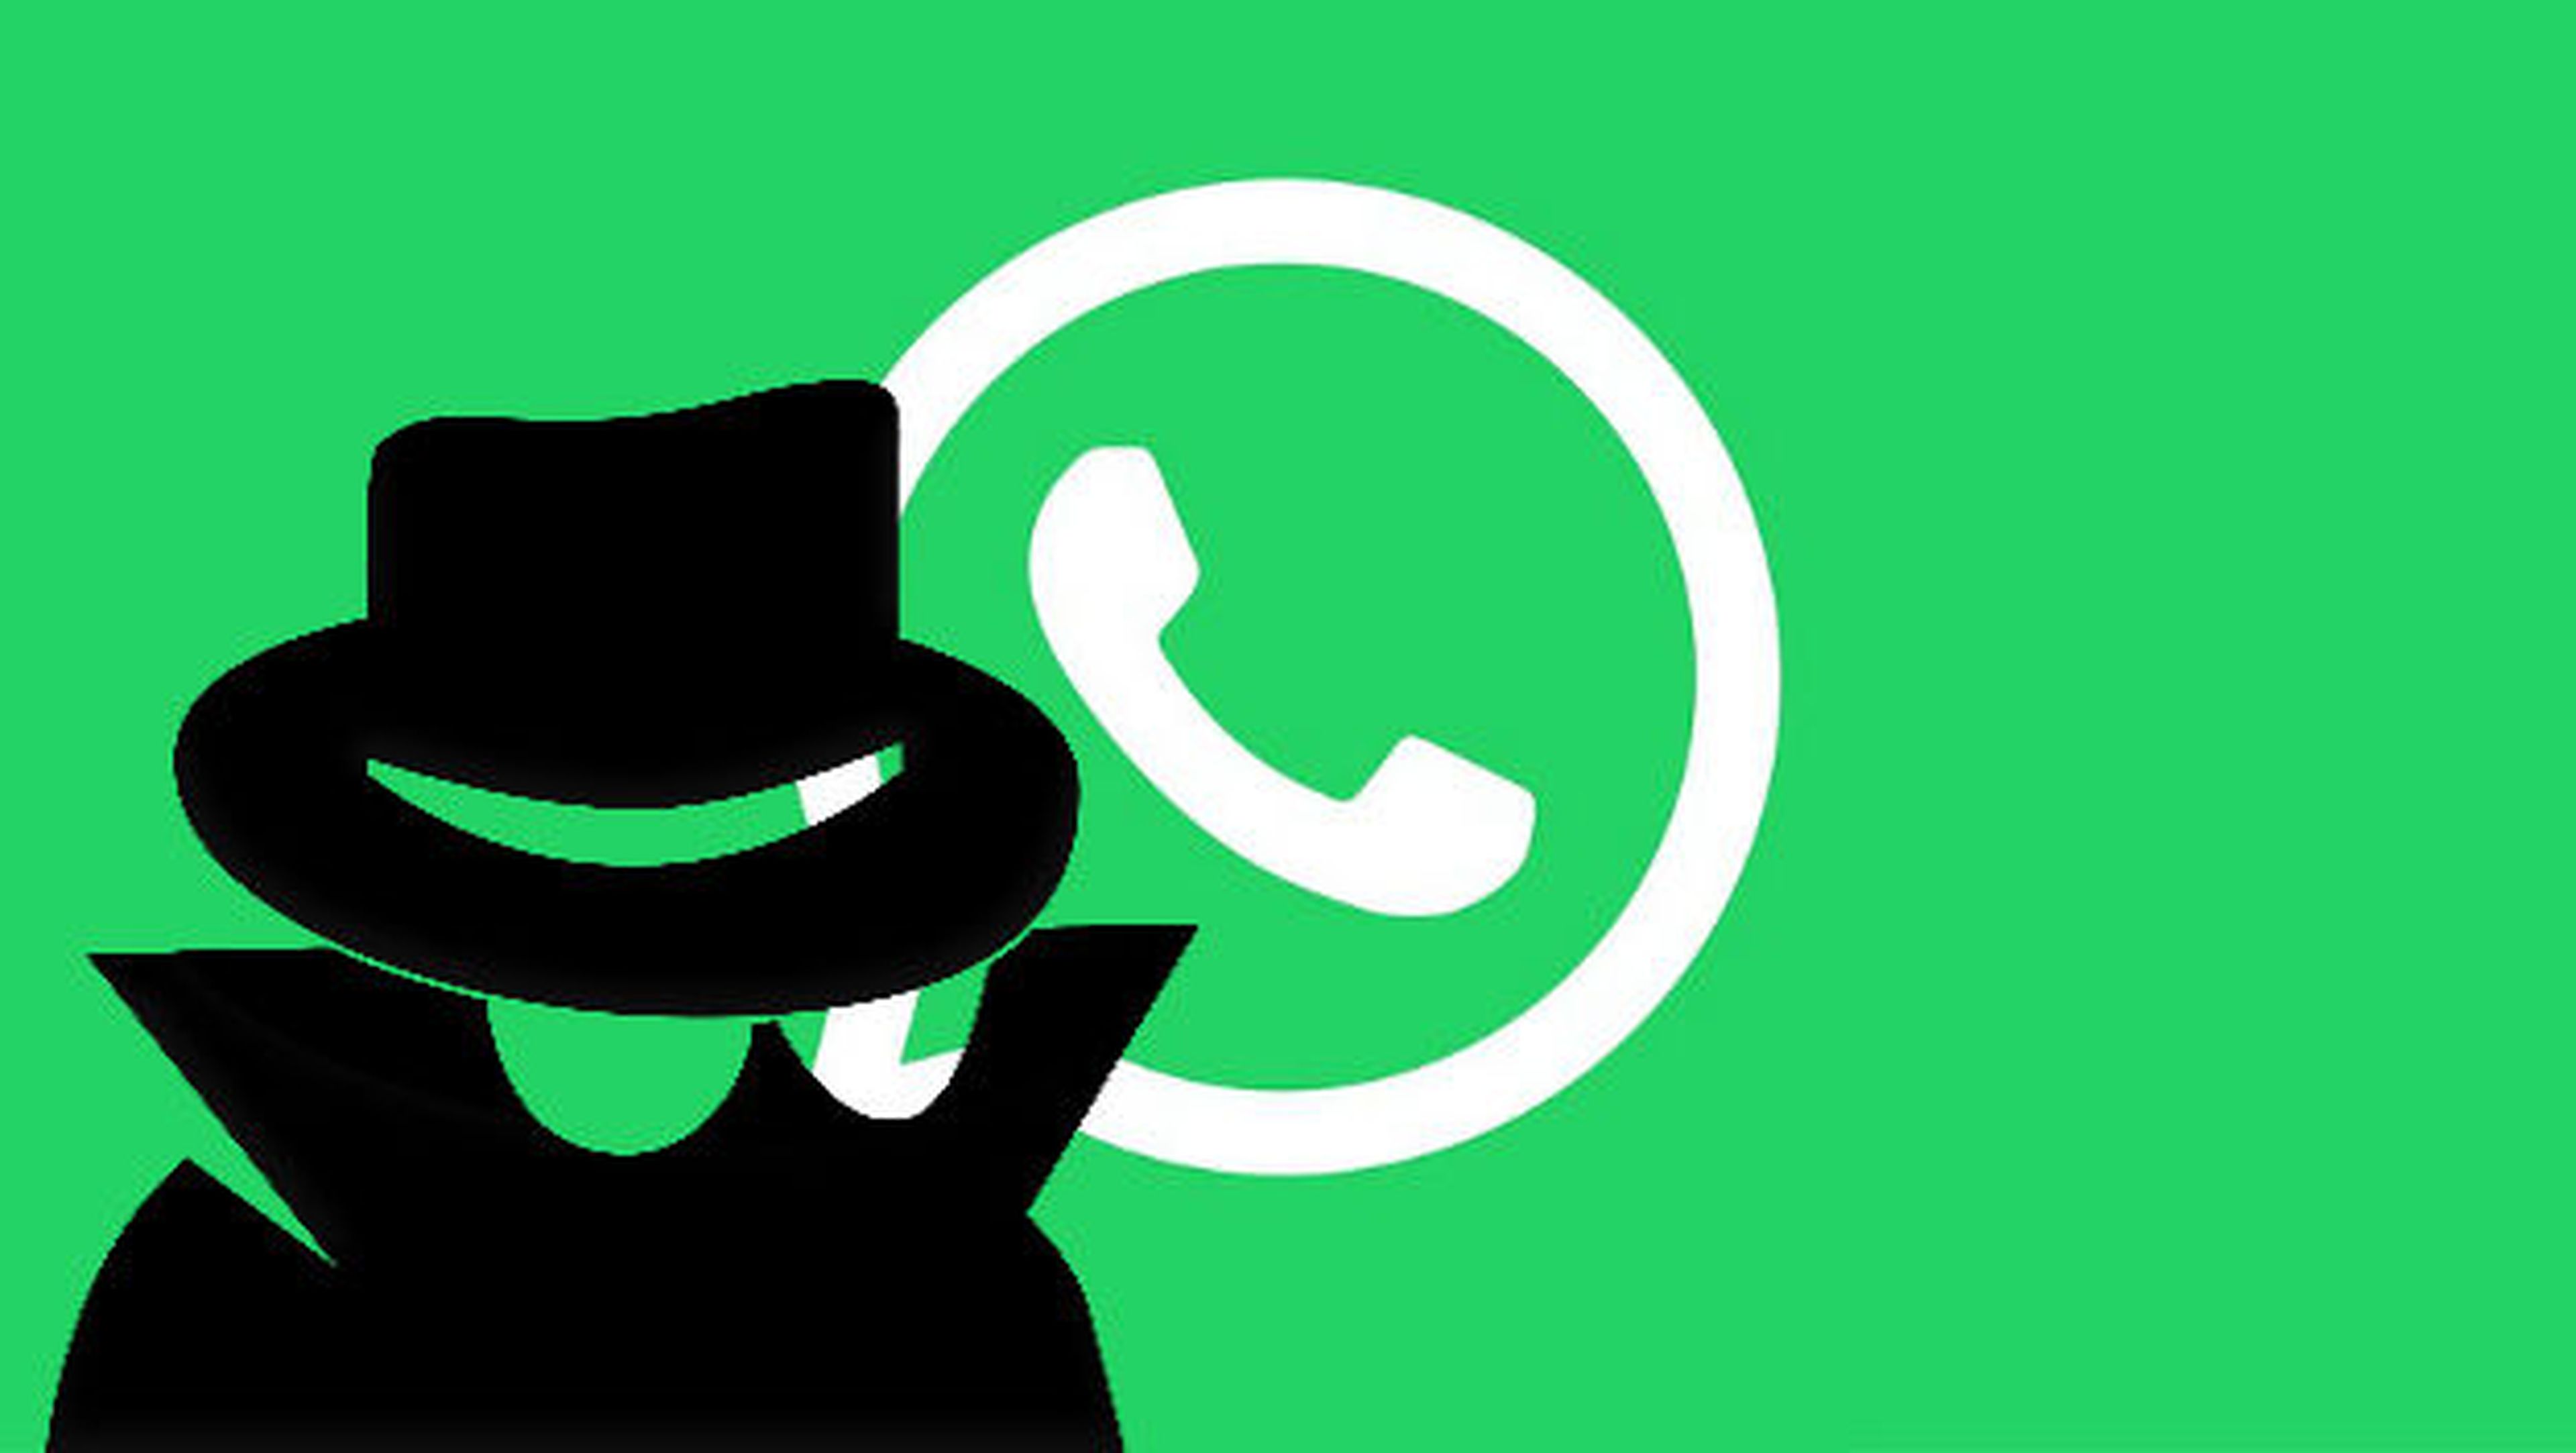 Con esta aplicación puedes enviar mensajes de WhatsApp a números que no tienes en tu agenda.